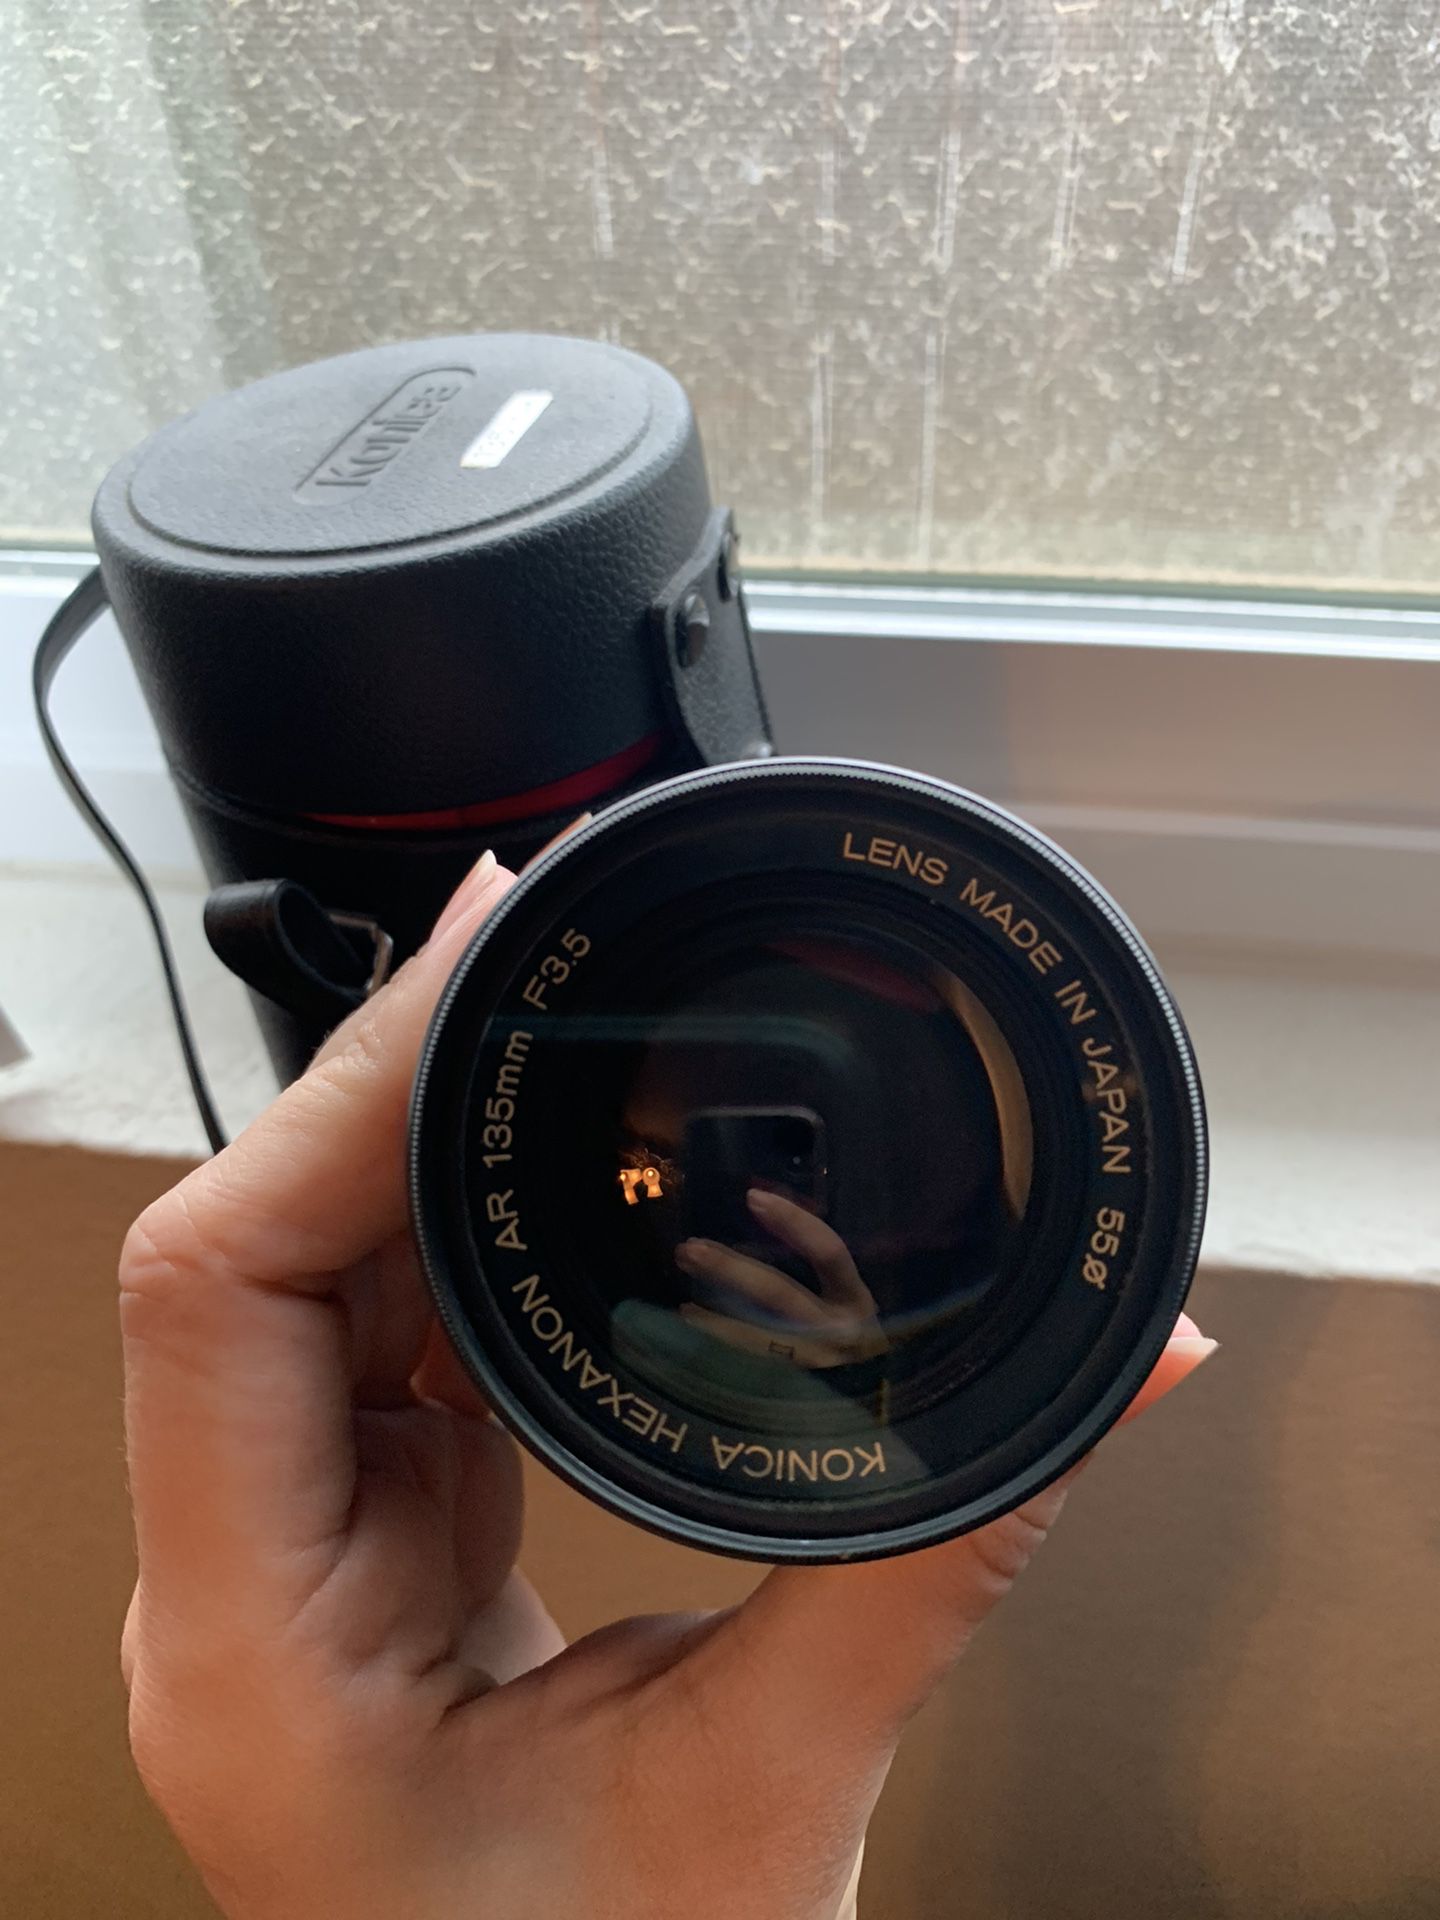 Konica camera lens